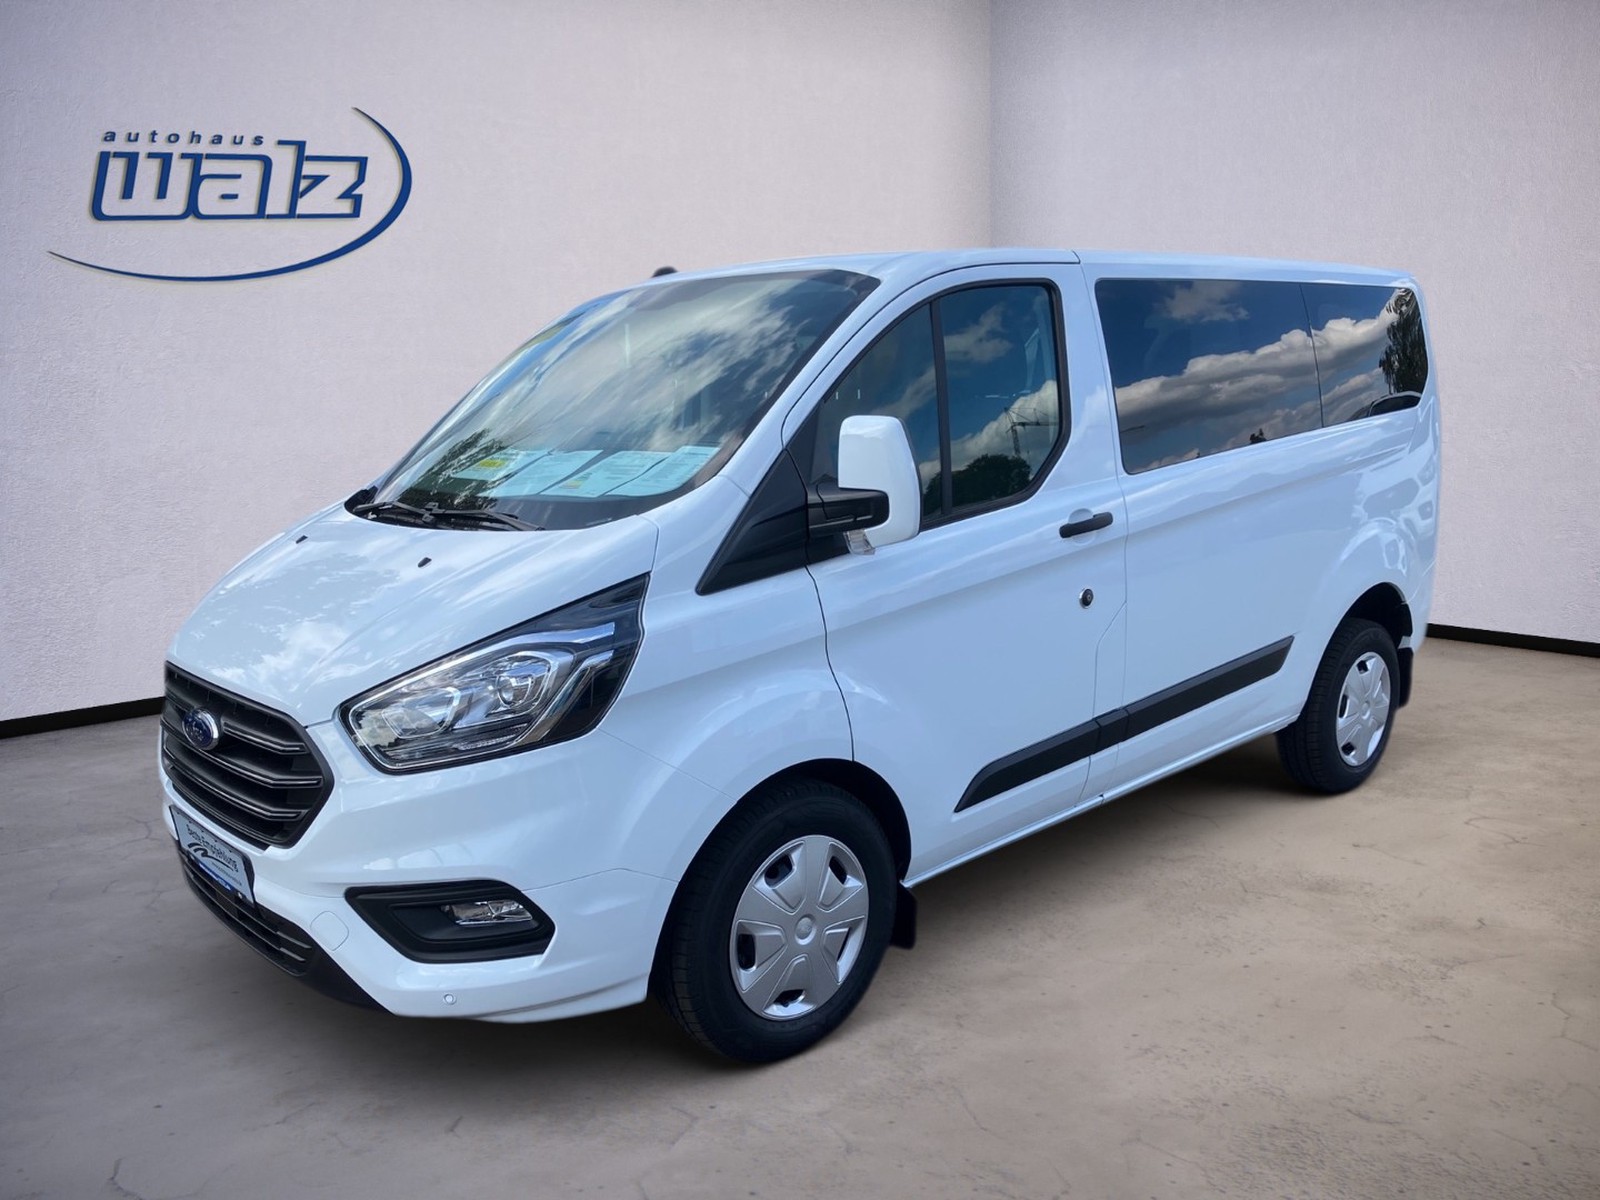 Ford Transit Custom Kombi Vorführfahrzeug kaufen in Neuweiler Preis 39990  eur - Int.Nr.: 42022